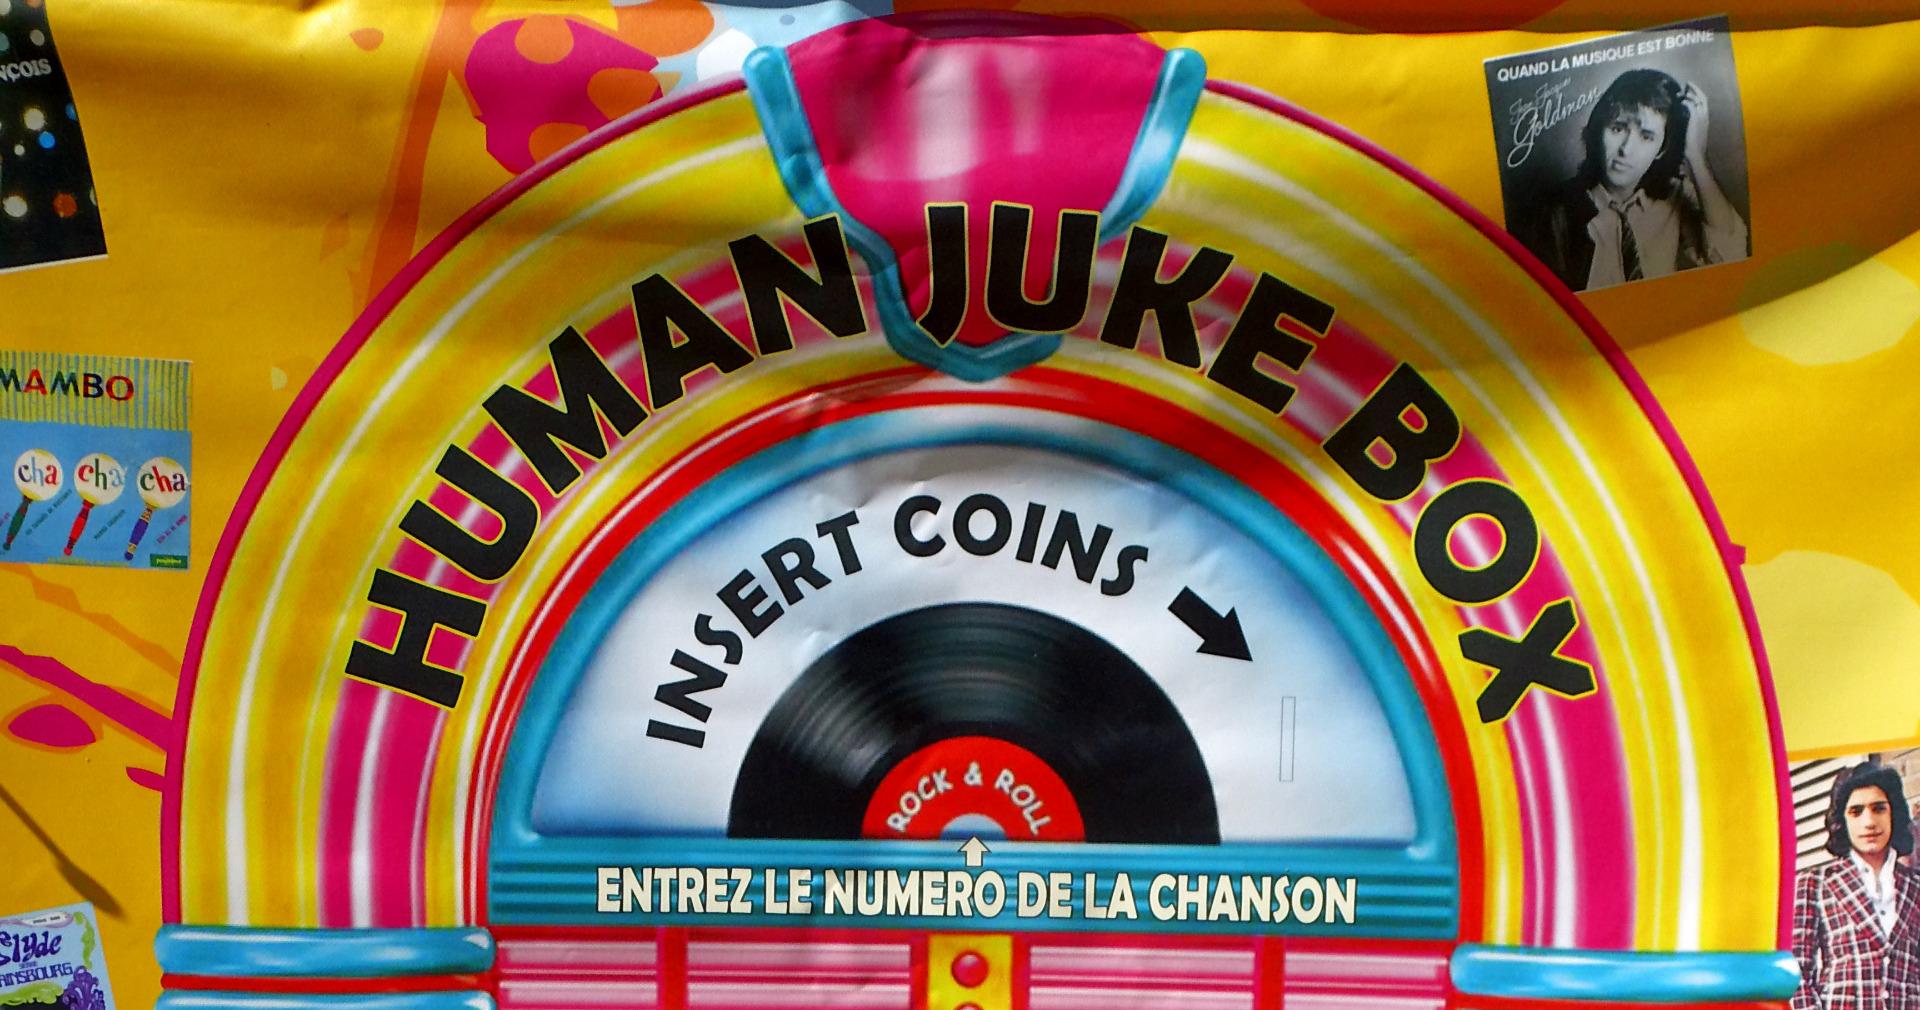 Human jukebox